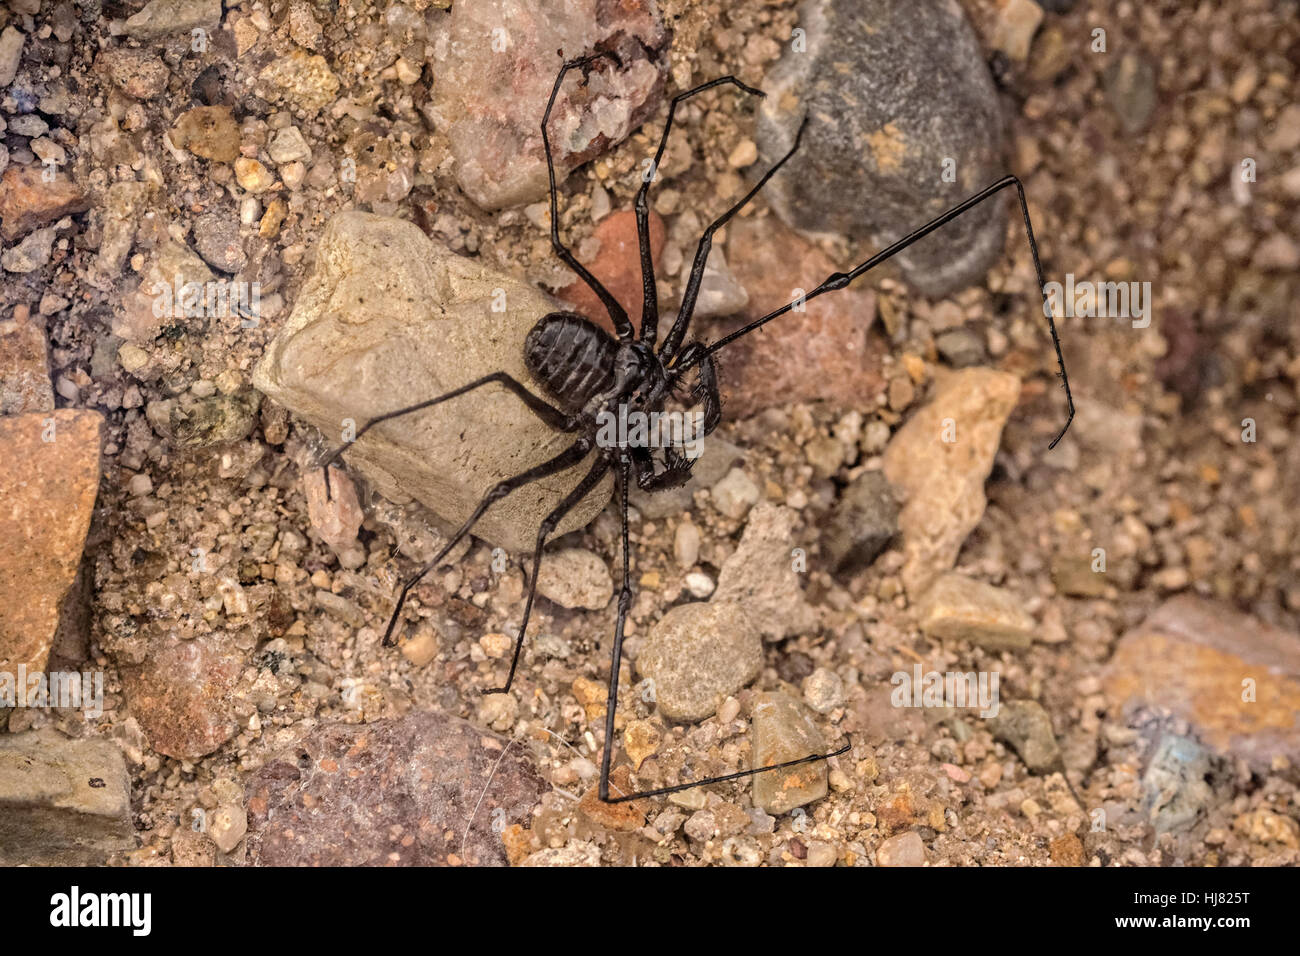 Amblypygi es una orden de araña chelicerate artrópodos también conocido como látigo látigo tailless arañas y escorpiones. Son arácnidos Amblypygids Foto de stock